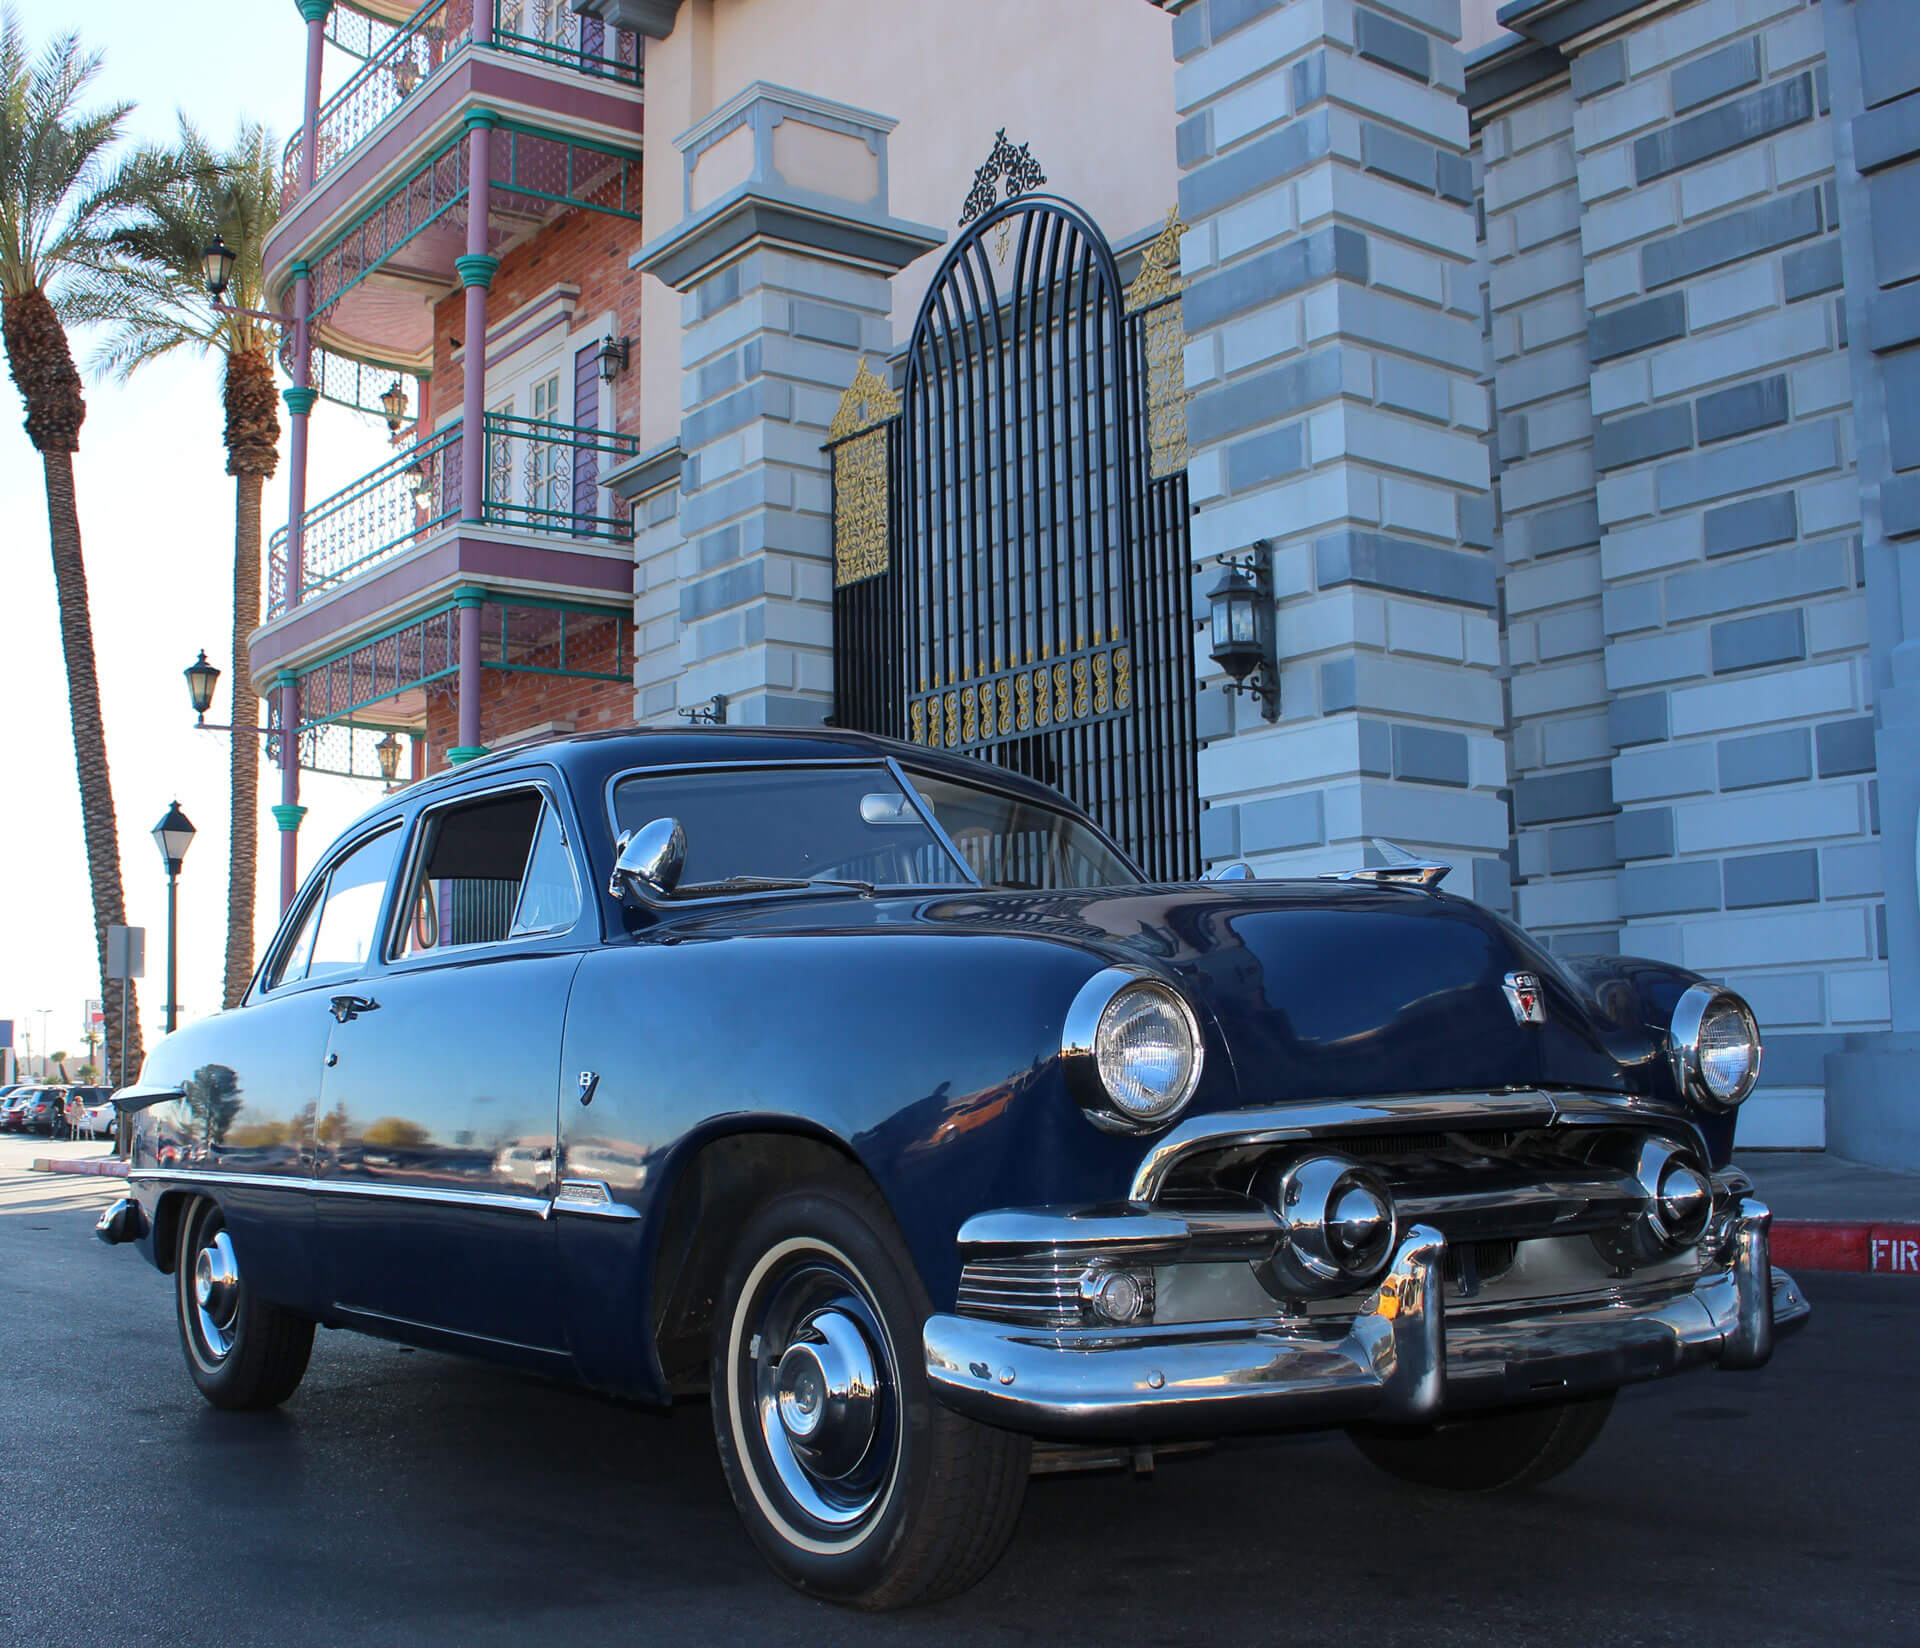 Las Vegas Classic Car Rentals